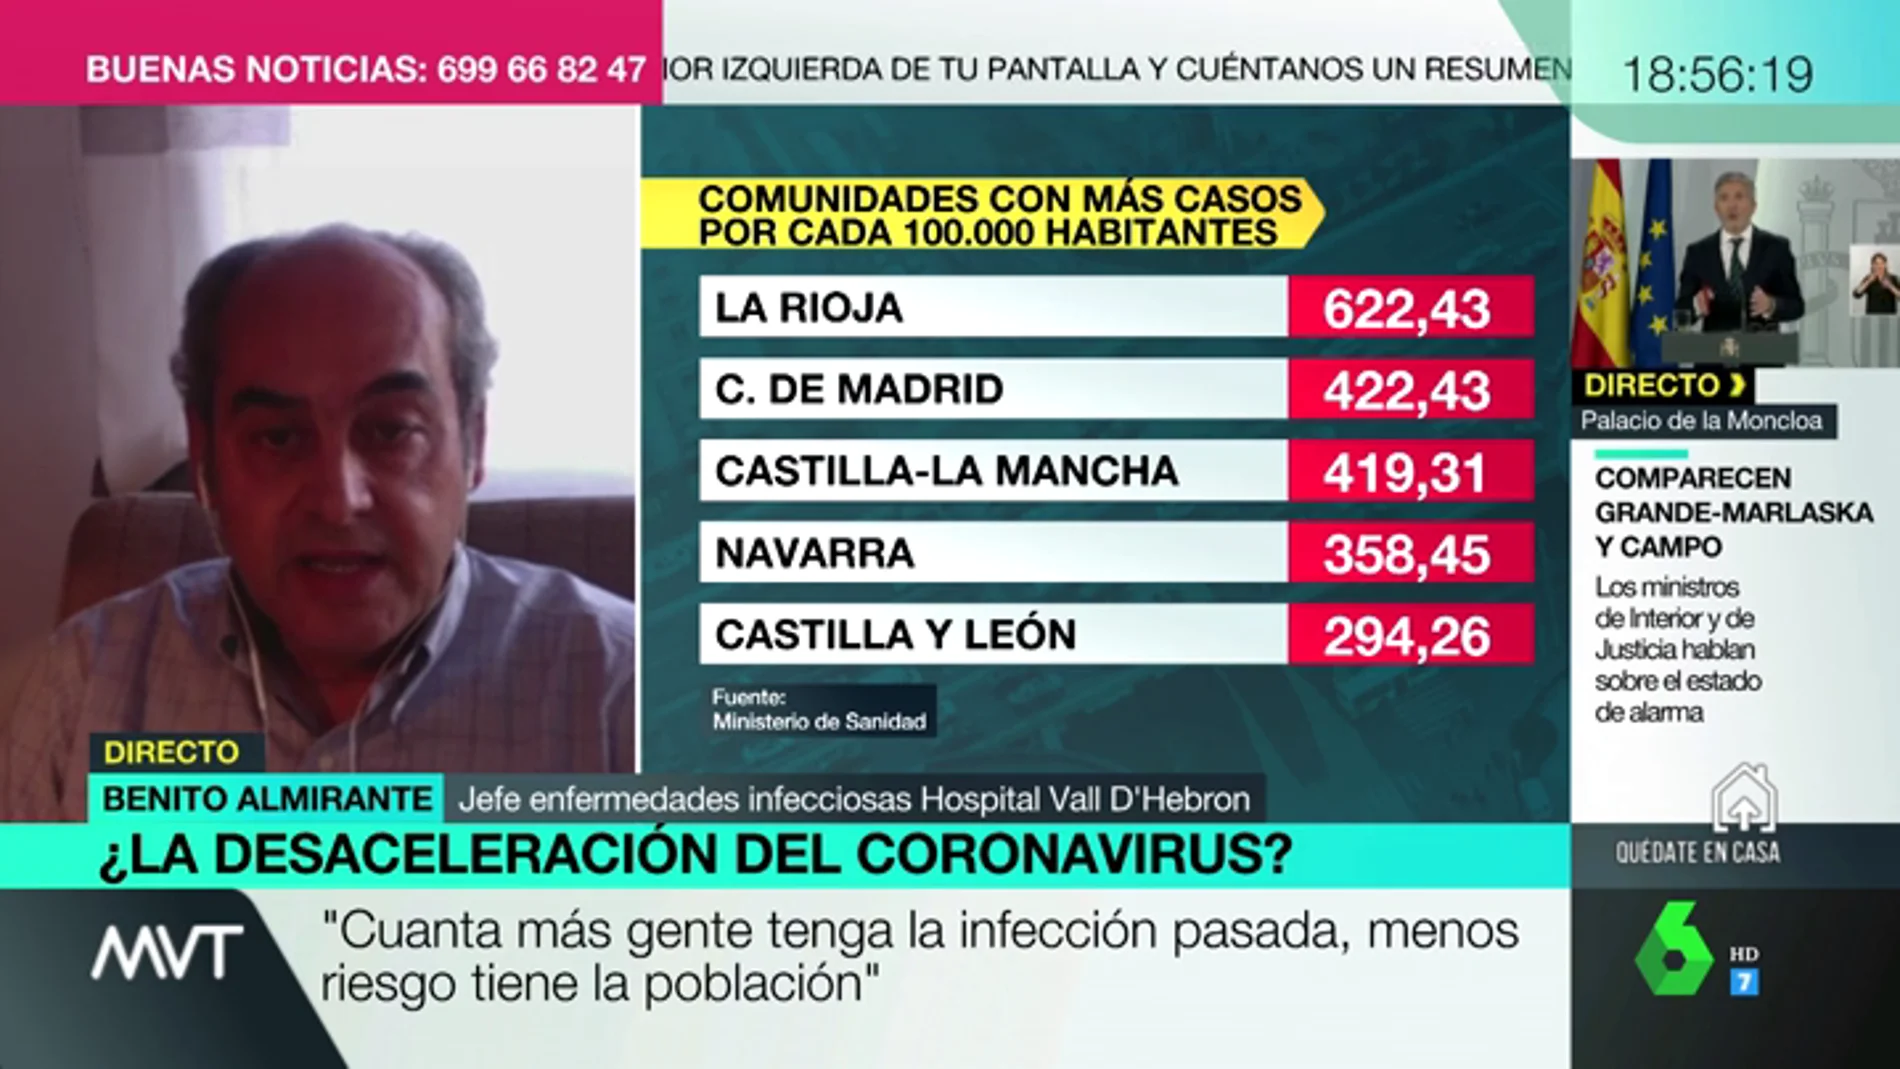 "Siete millones de españoles podrían haber superado ya el coronavirus": por qué es importante conocer los casos reales de Covid-19